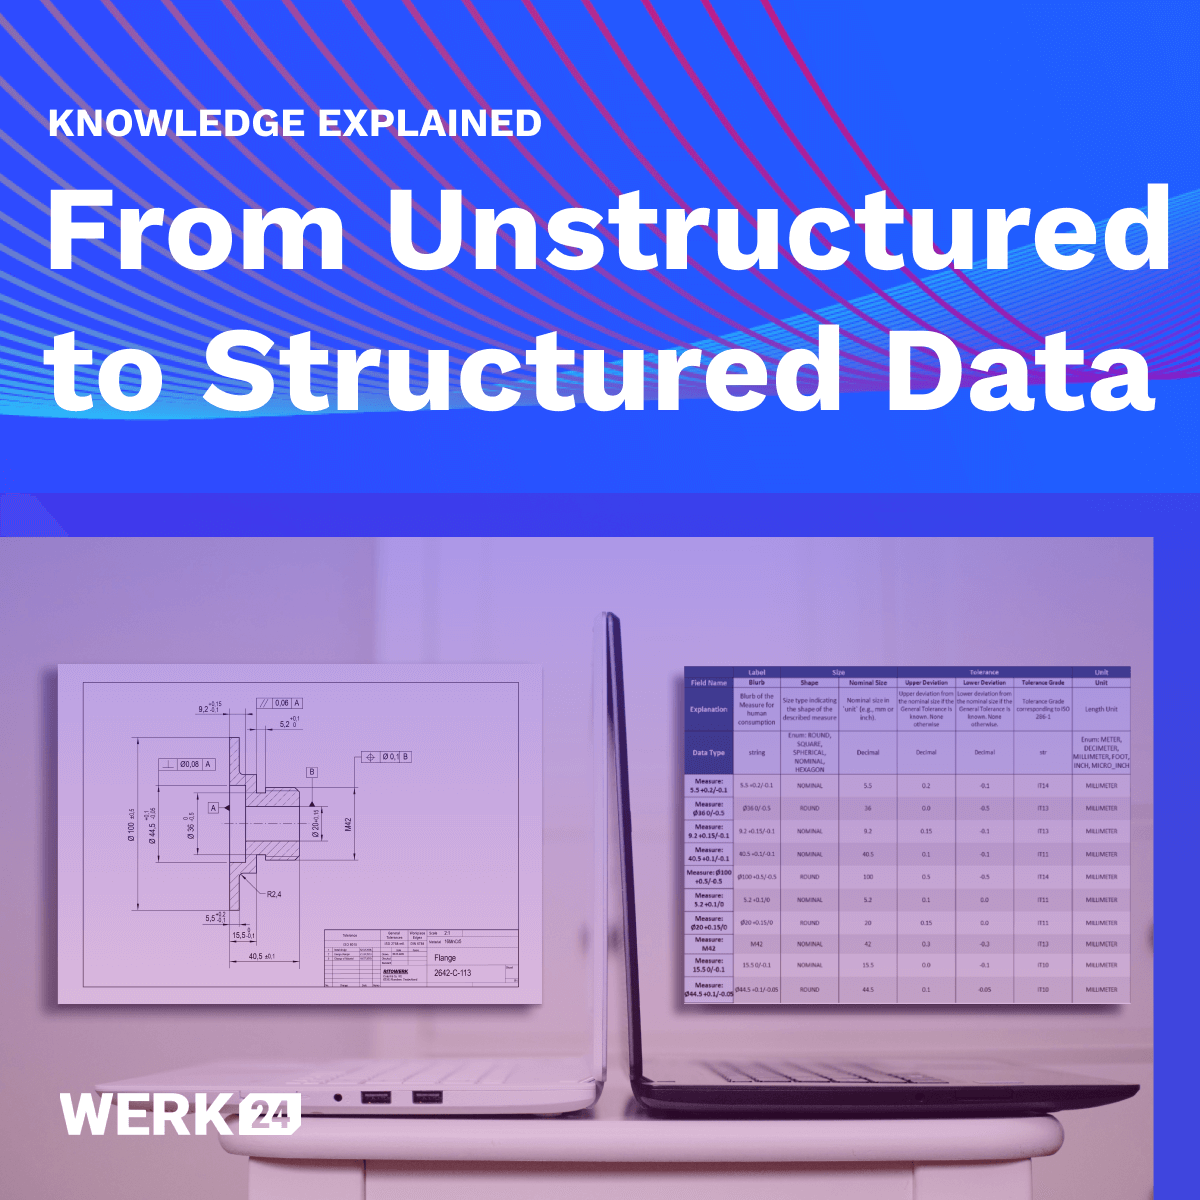 Dati strutturati contro dati non strutturati